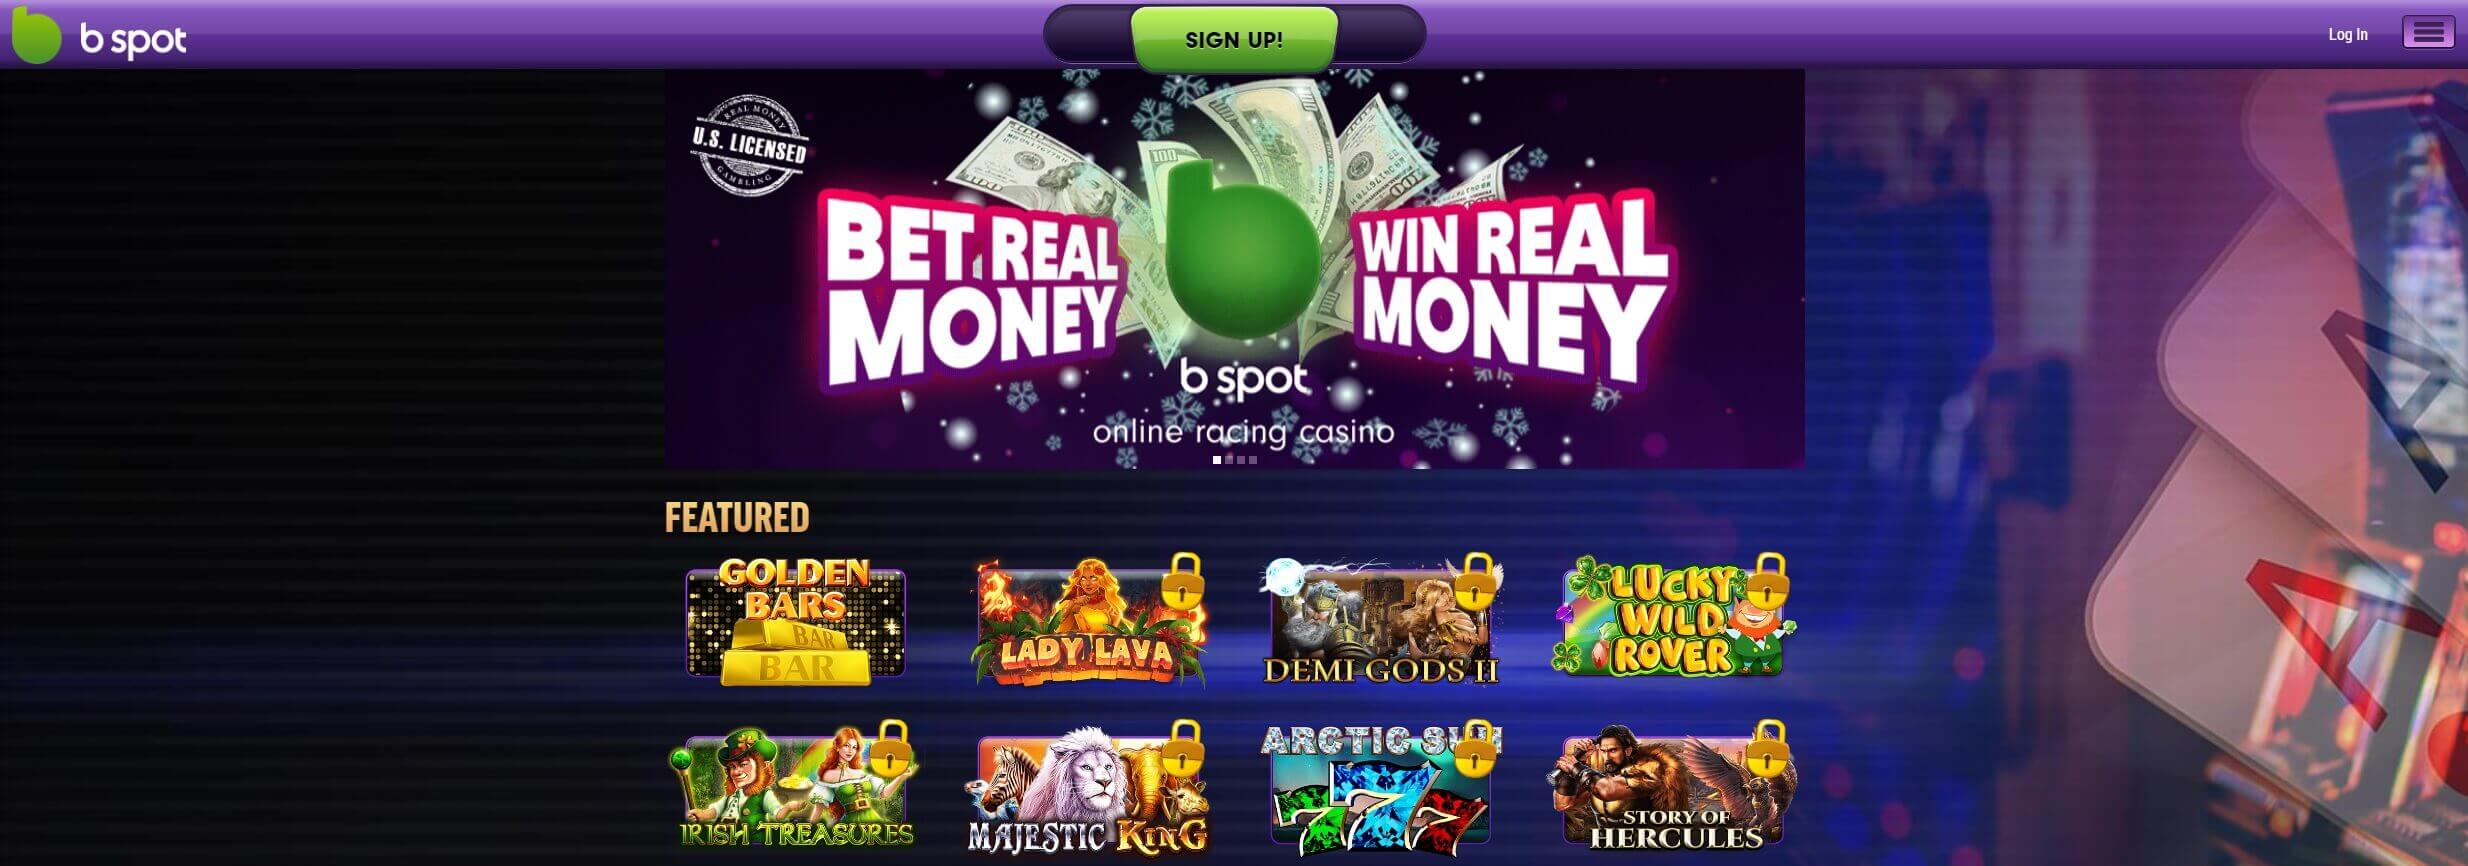 b spot casino homepage